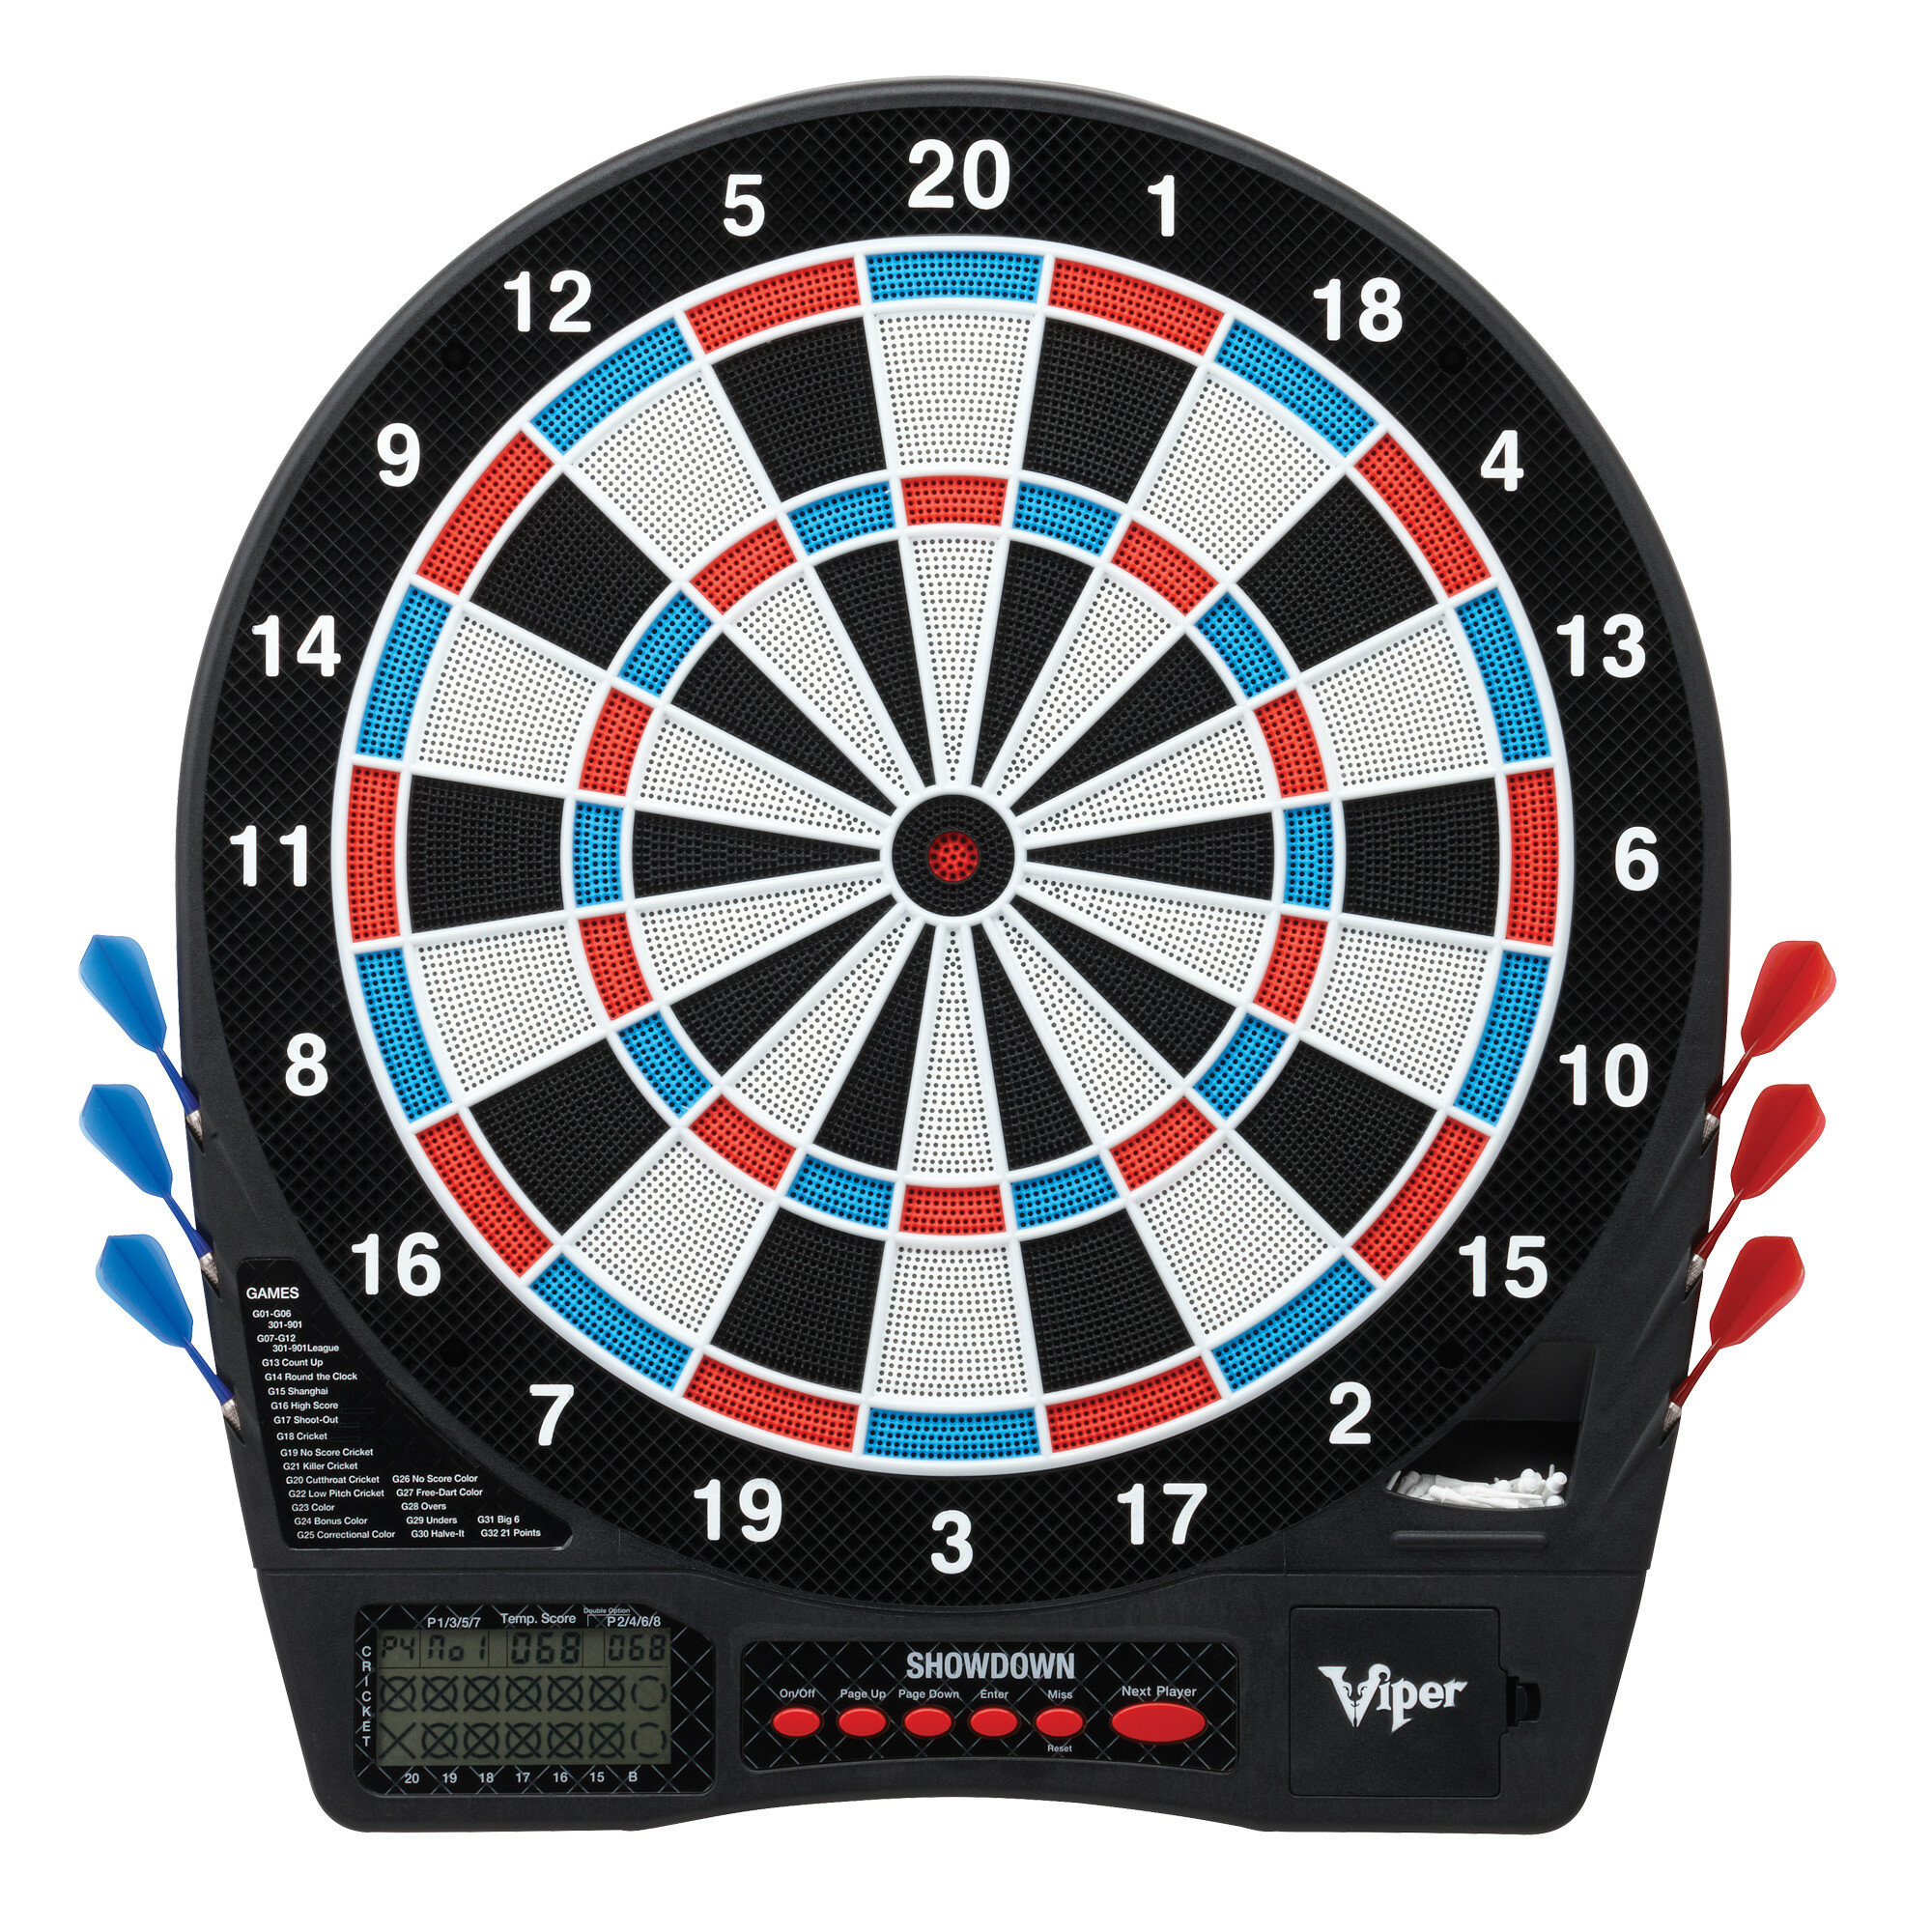 16g Soft Tip Darts 200 Tip Points For Electronic Dartboard 34 Dart 9 Sets 